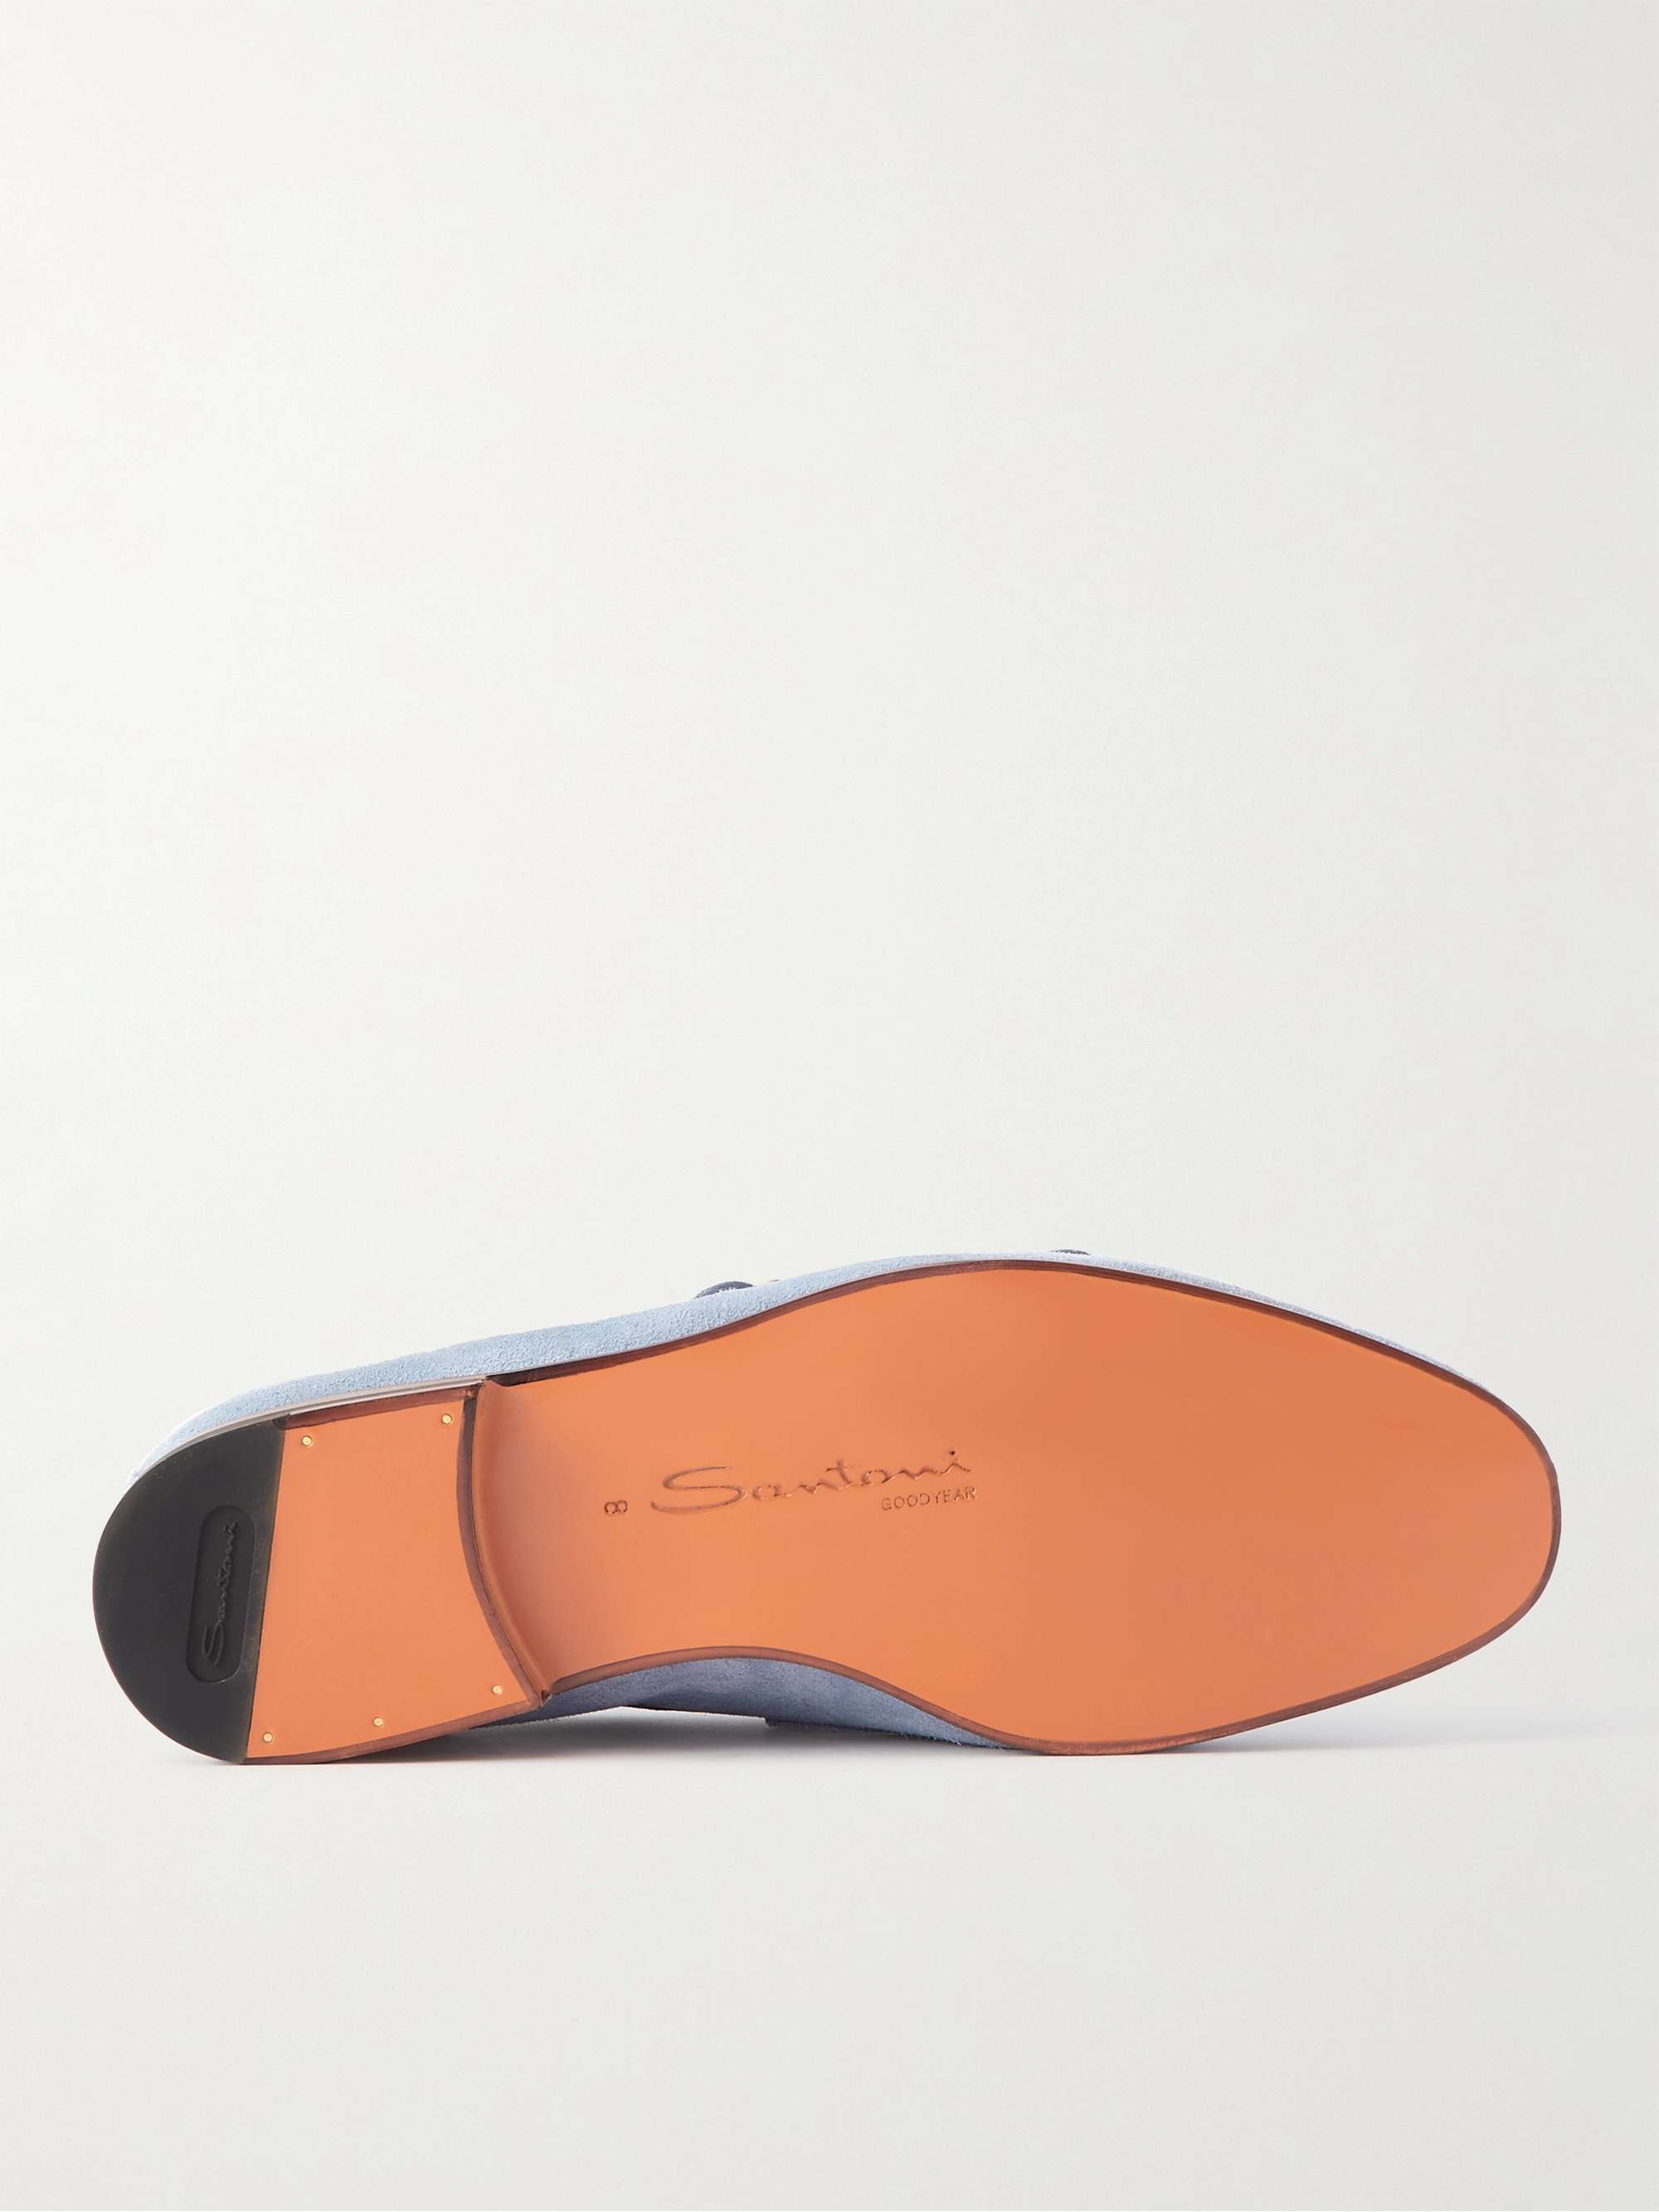 SANTONI Suede Monk-Strap Shoes